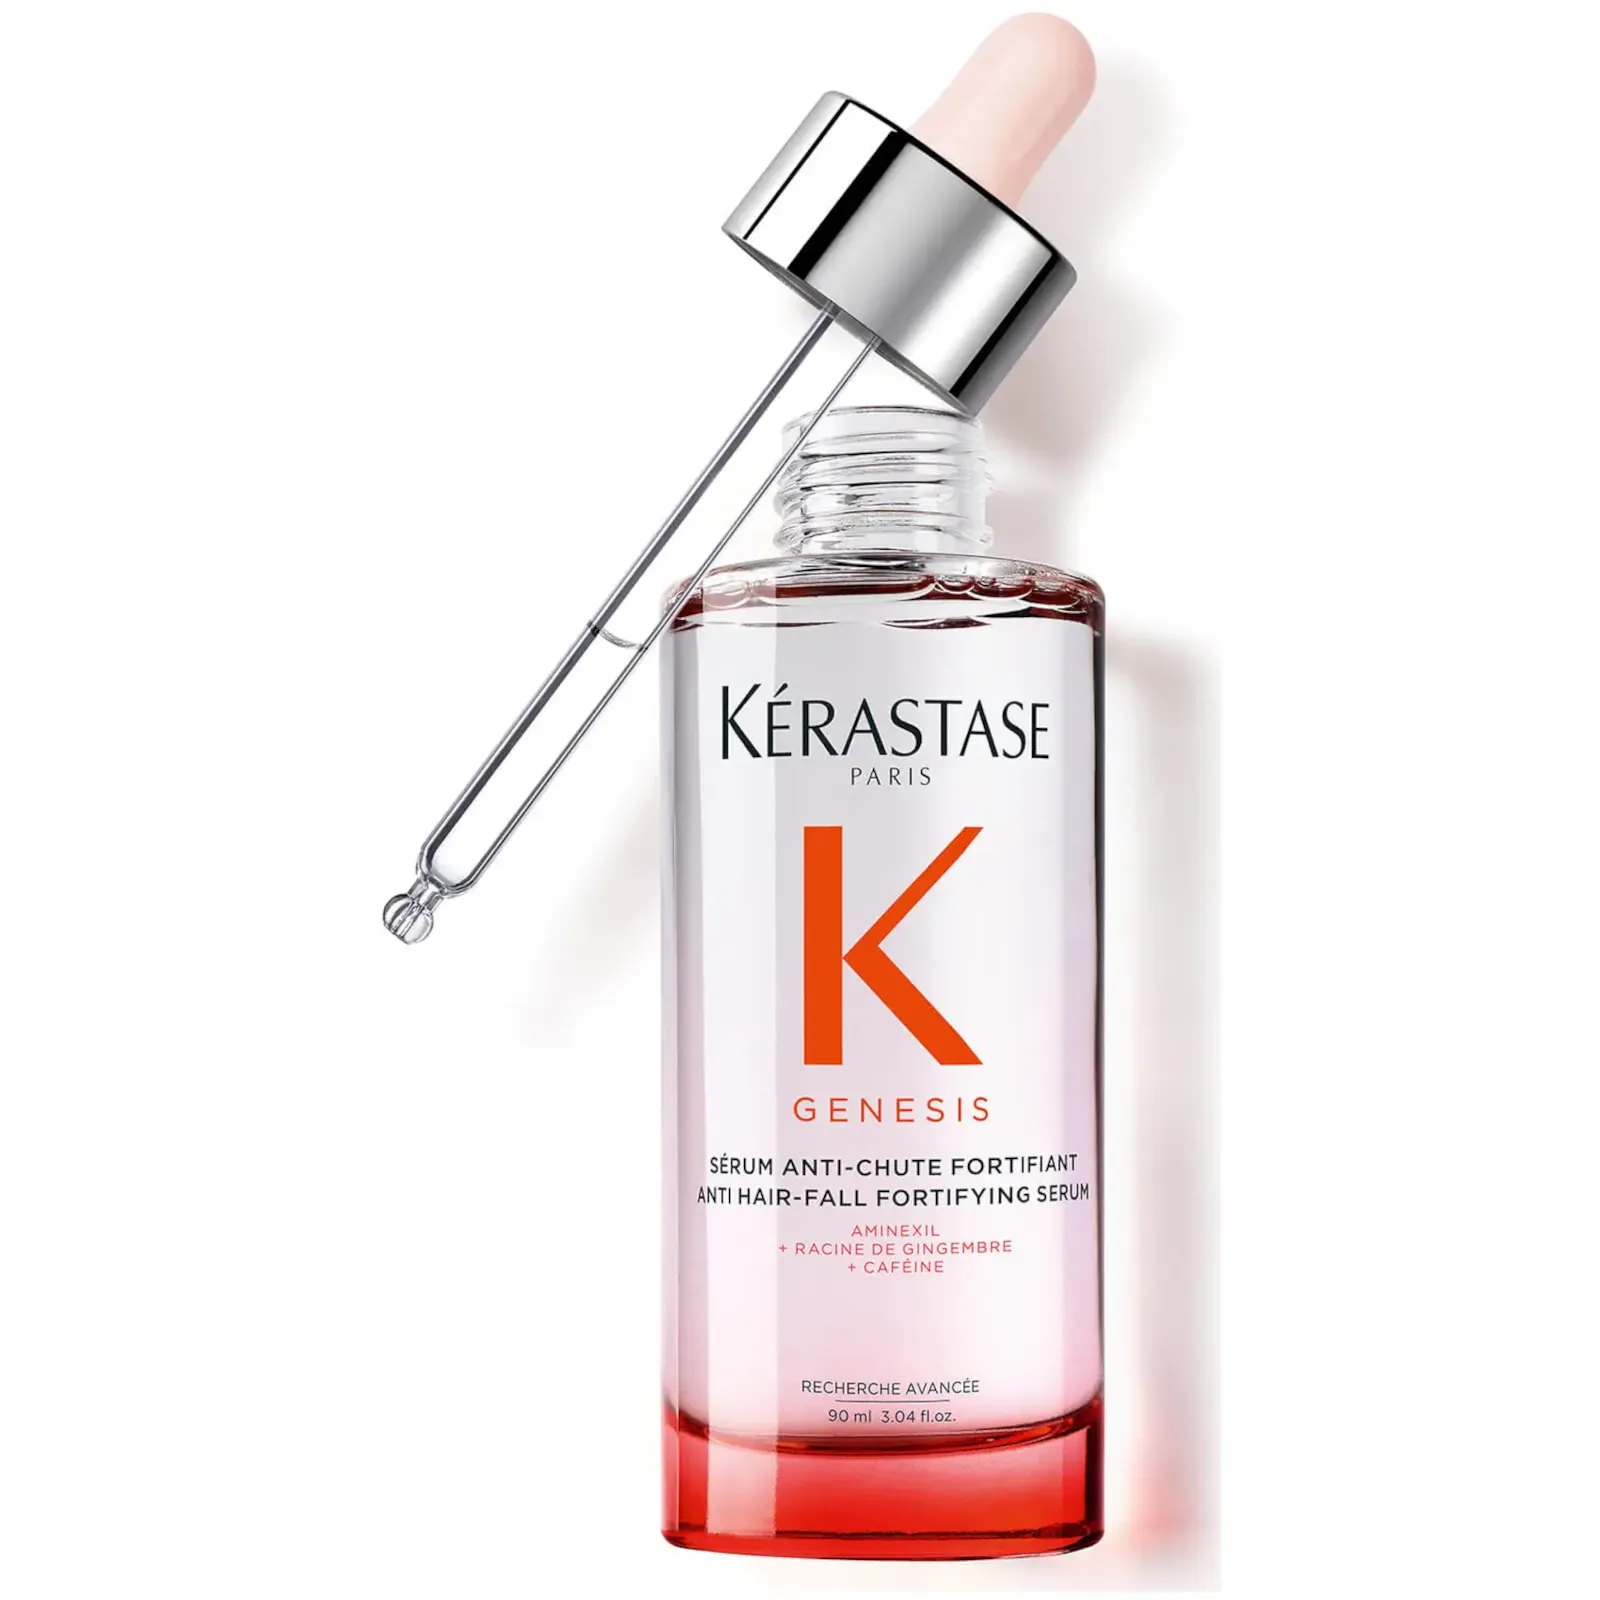 Kérastase genesis anti hair-fall fortifying serum 90ml  - Lyskin